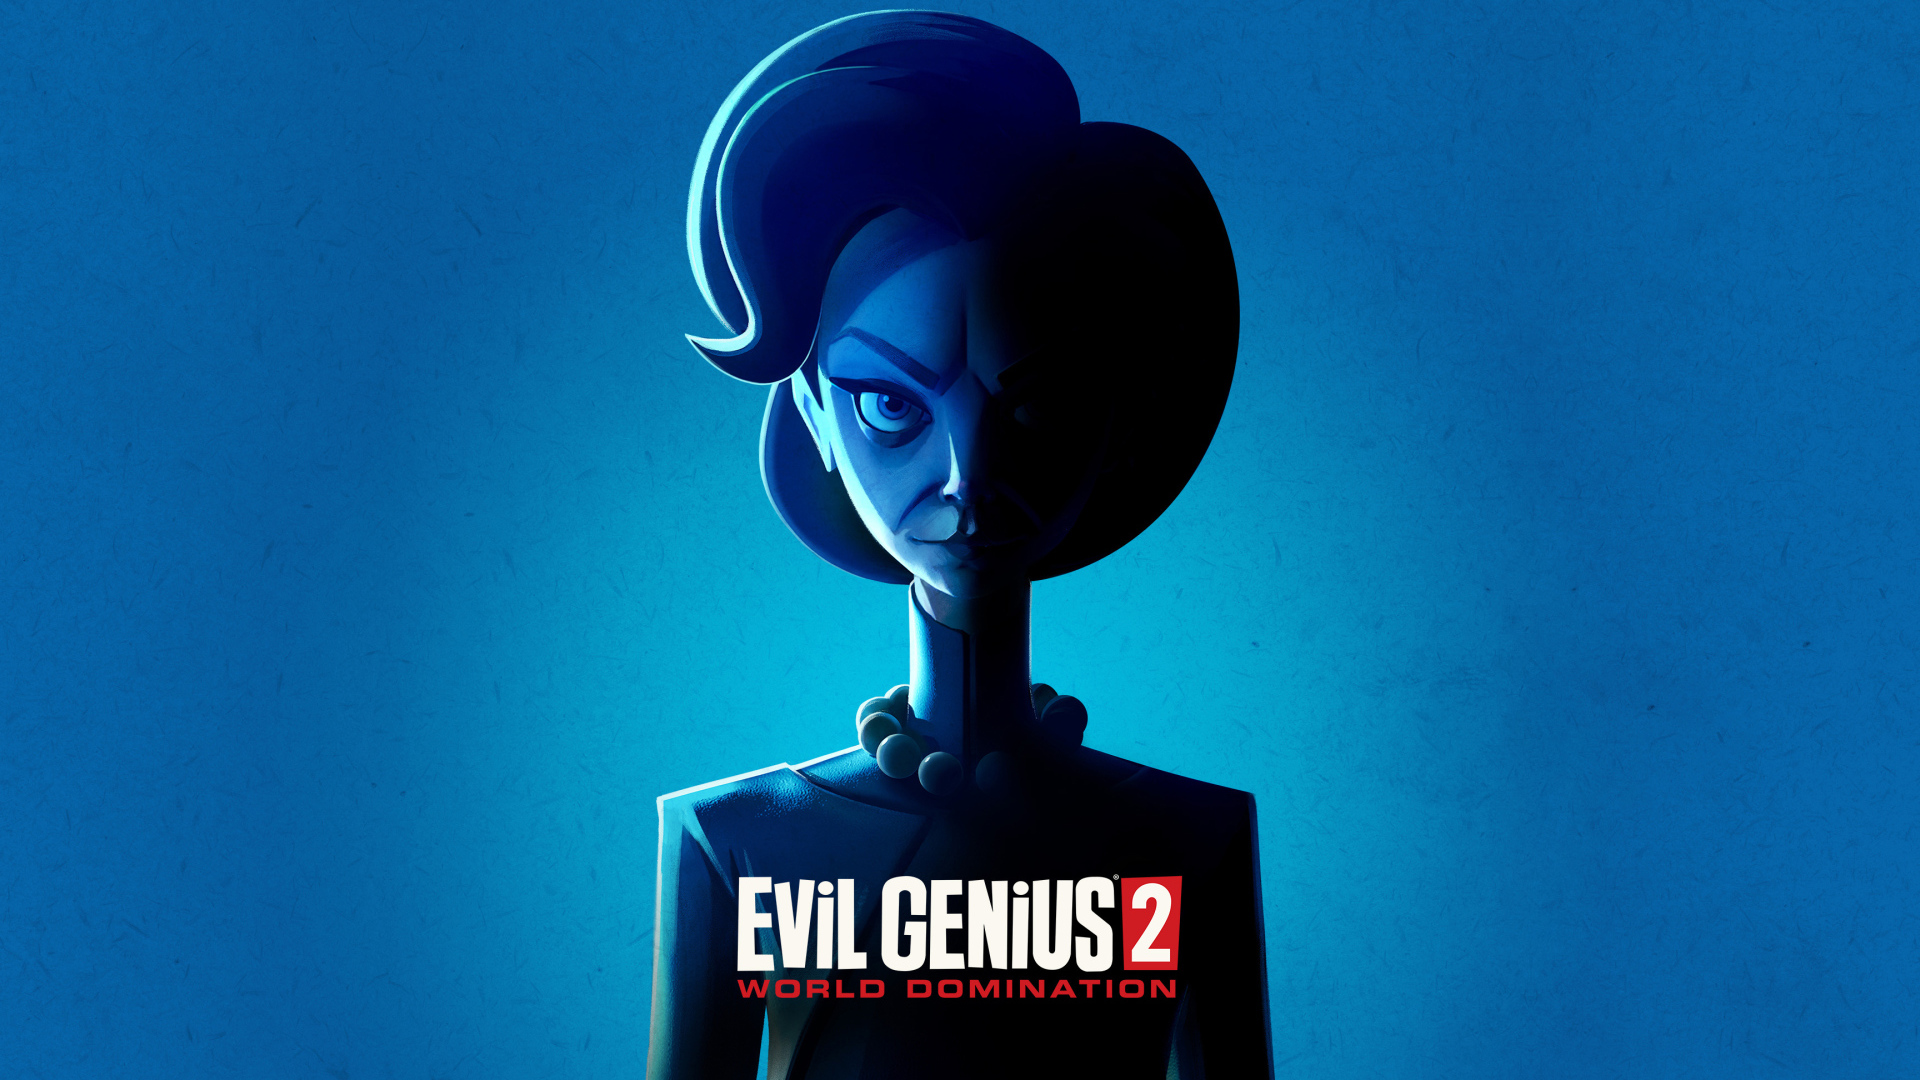 Эмма персонаж компьютерной игры Evil Genius 2, 2021